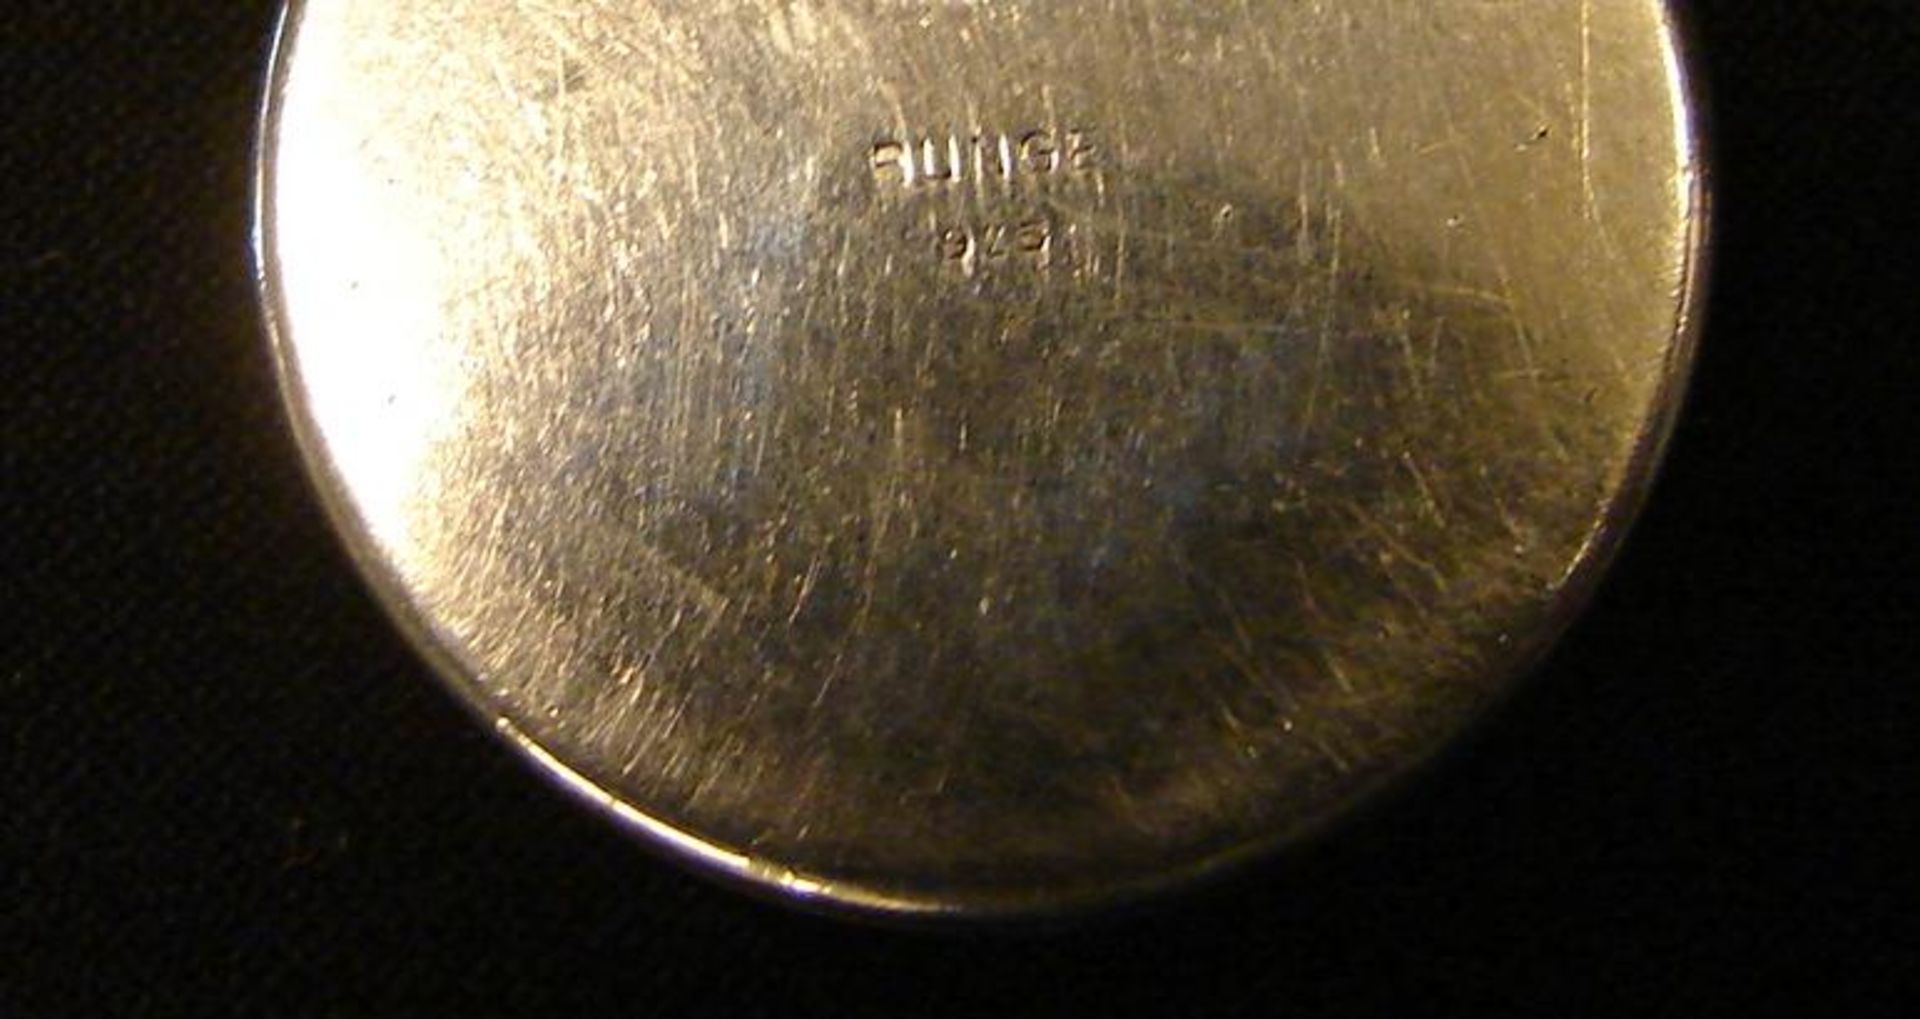 Dose, Silber mit Emaildekor, 50er Jahre, J.Bunge, Dm.ca. 3,7 cm- - -22.00 % buyer's premium on the - Image 3 of 3